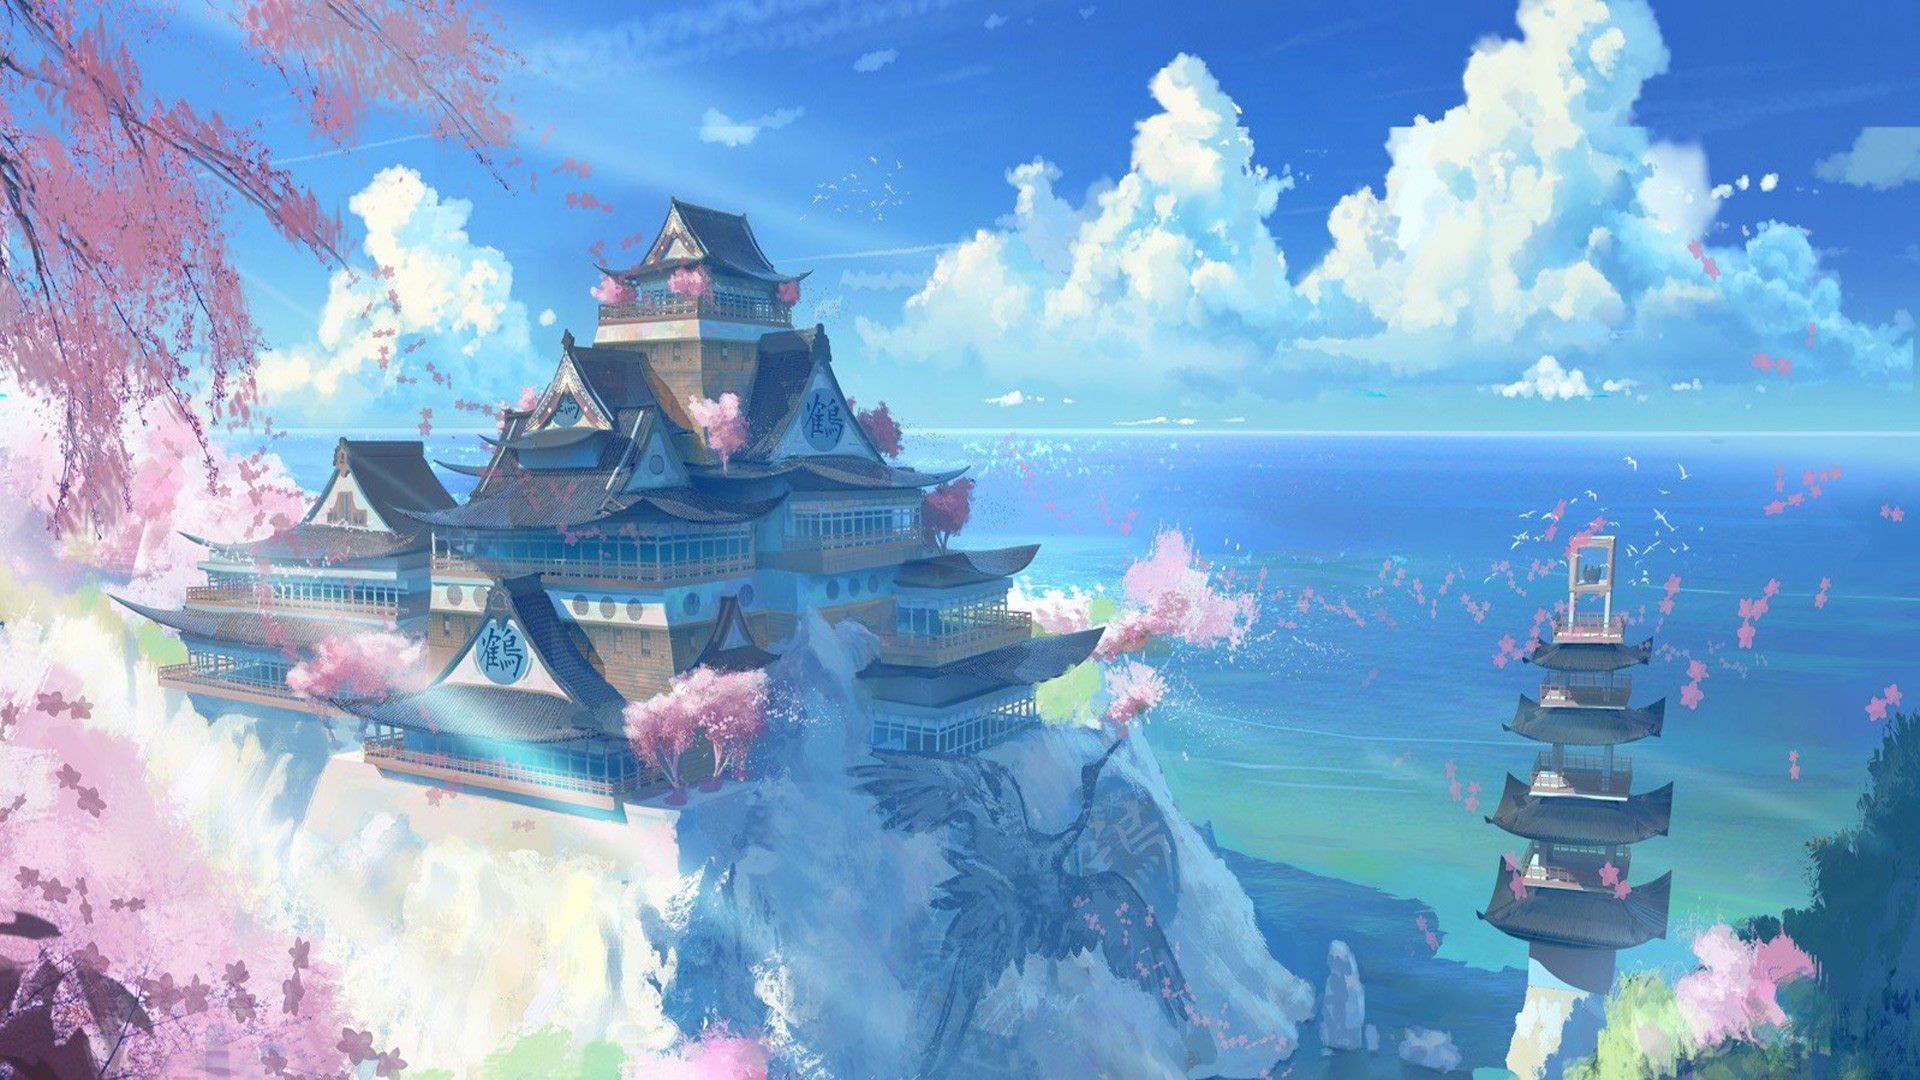 Nếu bạn là một fan của Anime và yêu thích phong cảnh đẹp, hình nền Anime Phong cảnh sẽ là một lựa chọn hoàn hảo cho điện thoại của bạn. Hãy thưởng thức vẻ đẹp tuyệt mỹ của Anime được tái hiện tinh tế và đầy sức sống trong các bức hình nền đẹp mắt này.